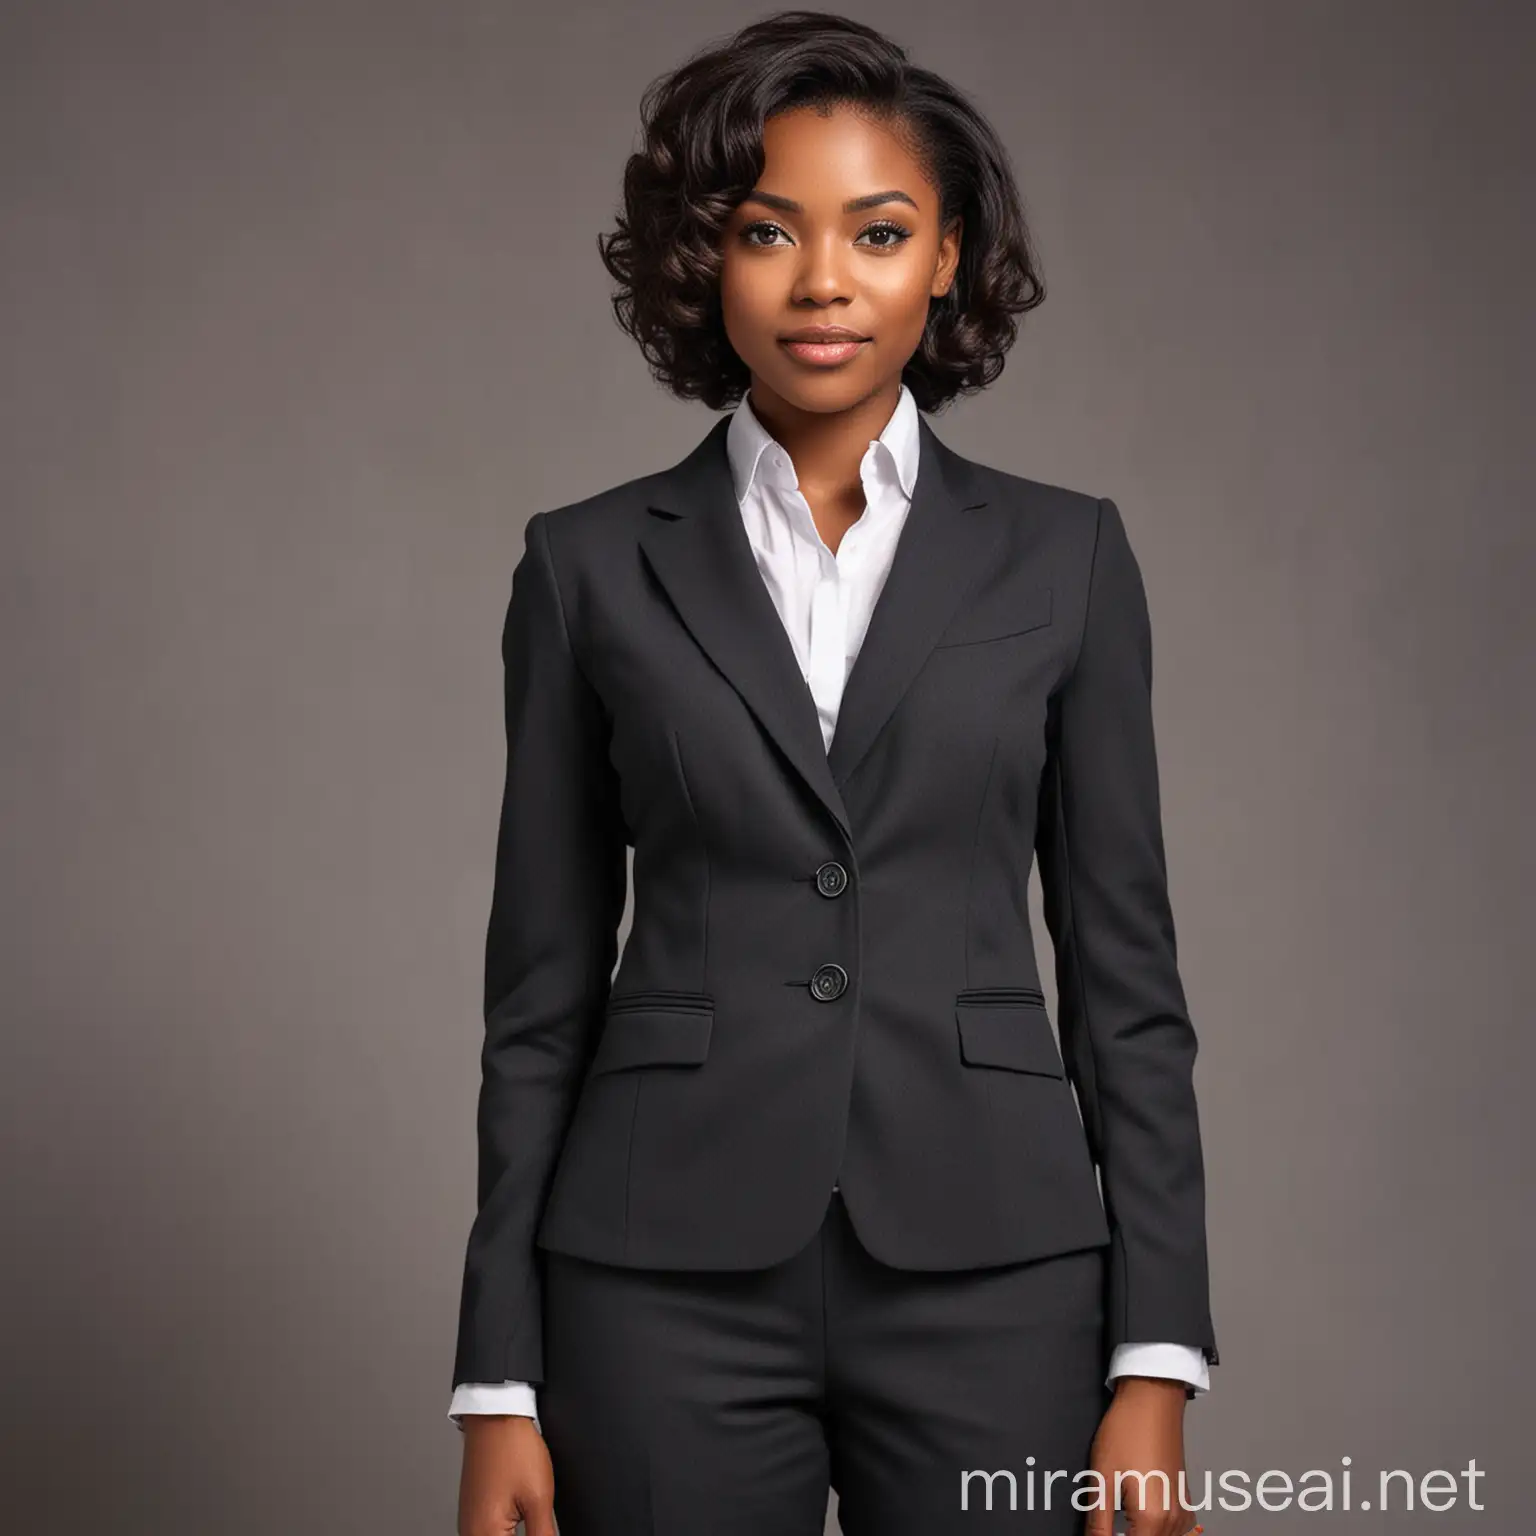 Professional Black Lady in Suit Portrait